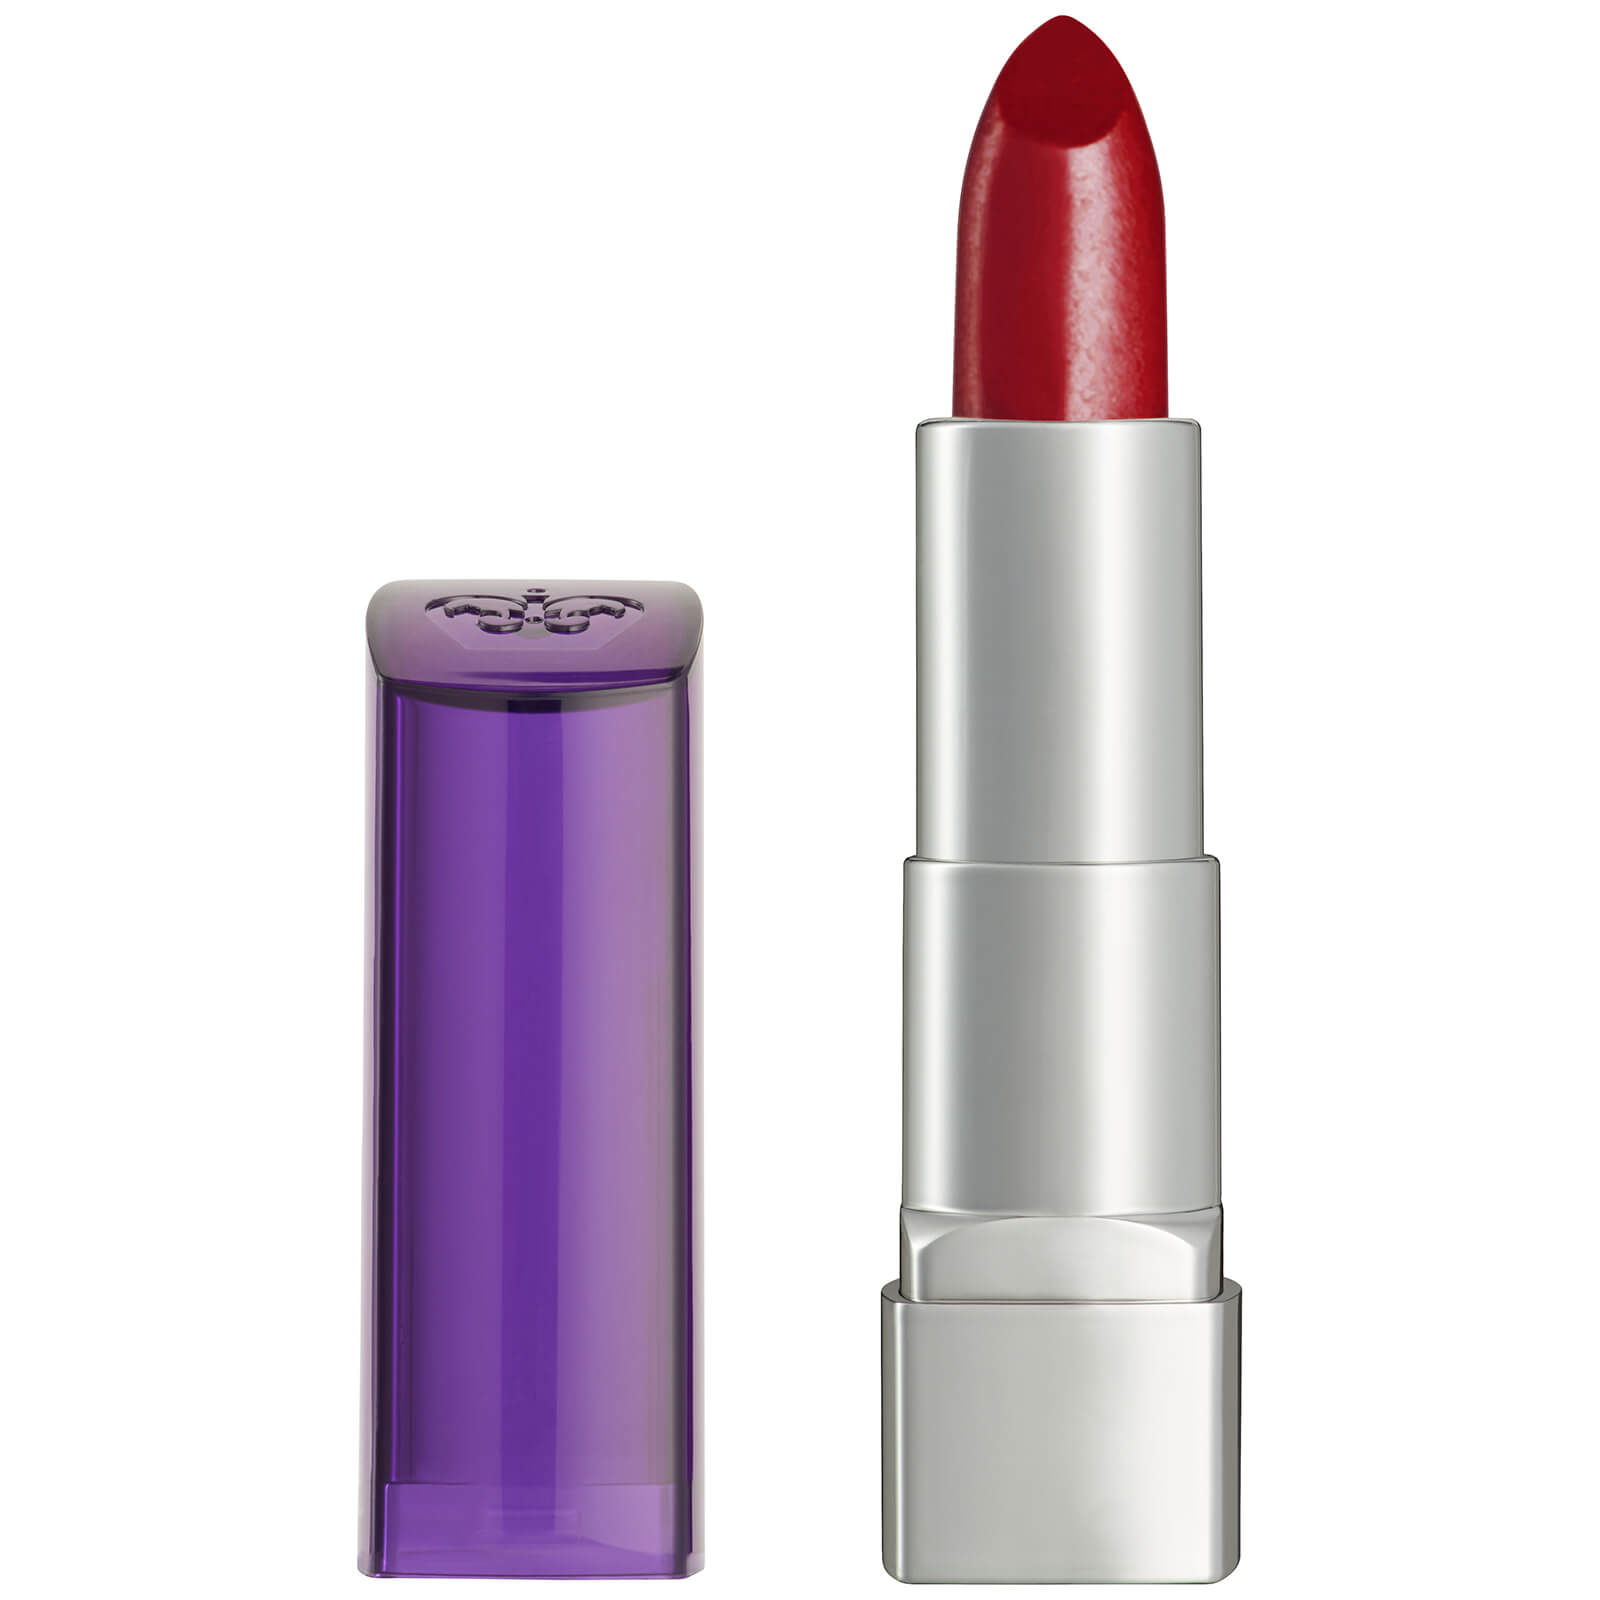 Rimmel Moisture Renew Lipstick (verschiedene Farbtöne) - Mayfair Red Lady von Rimmel